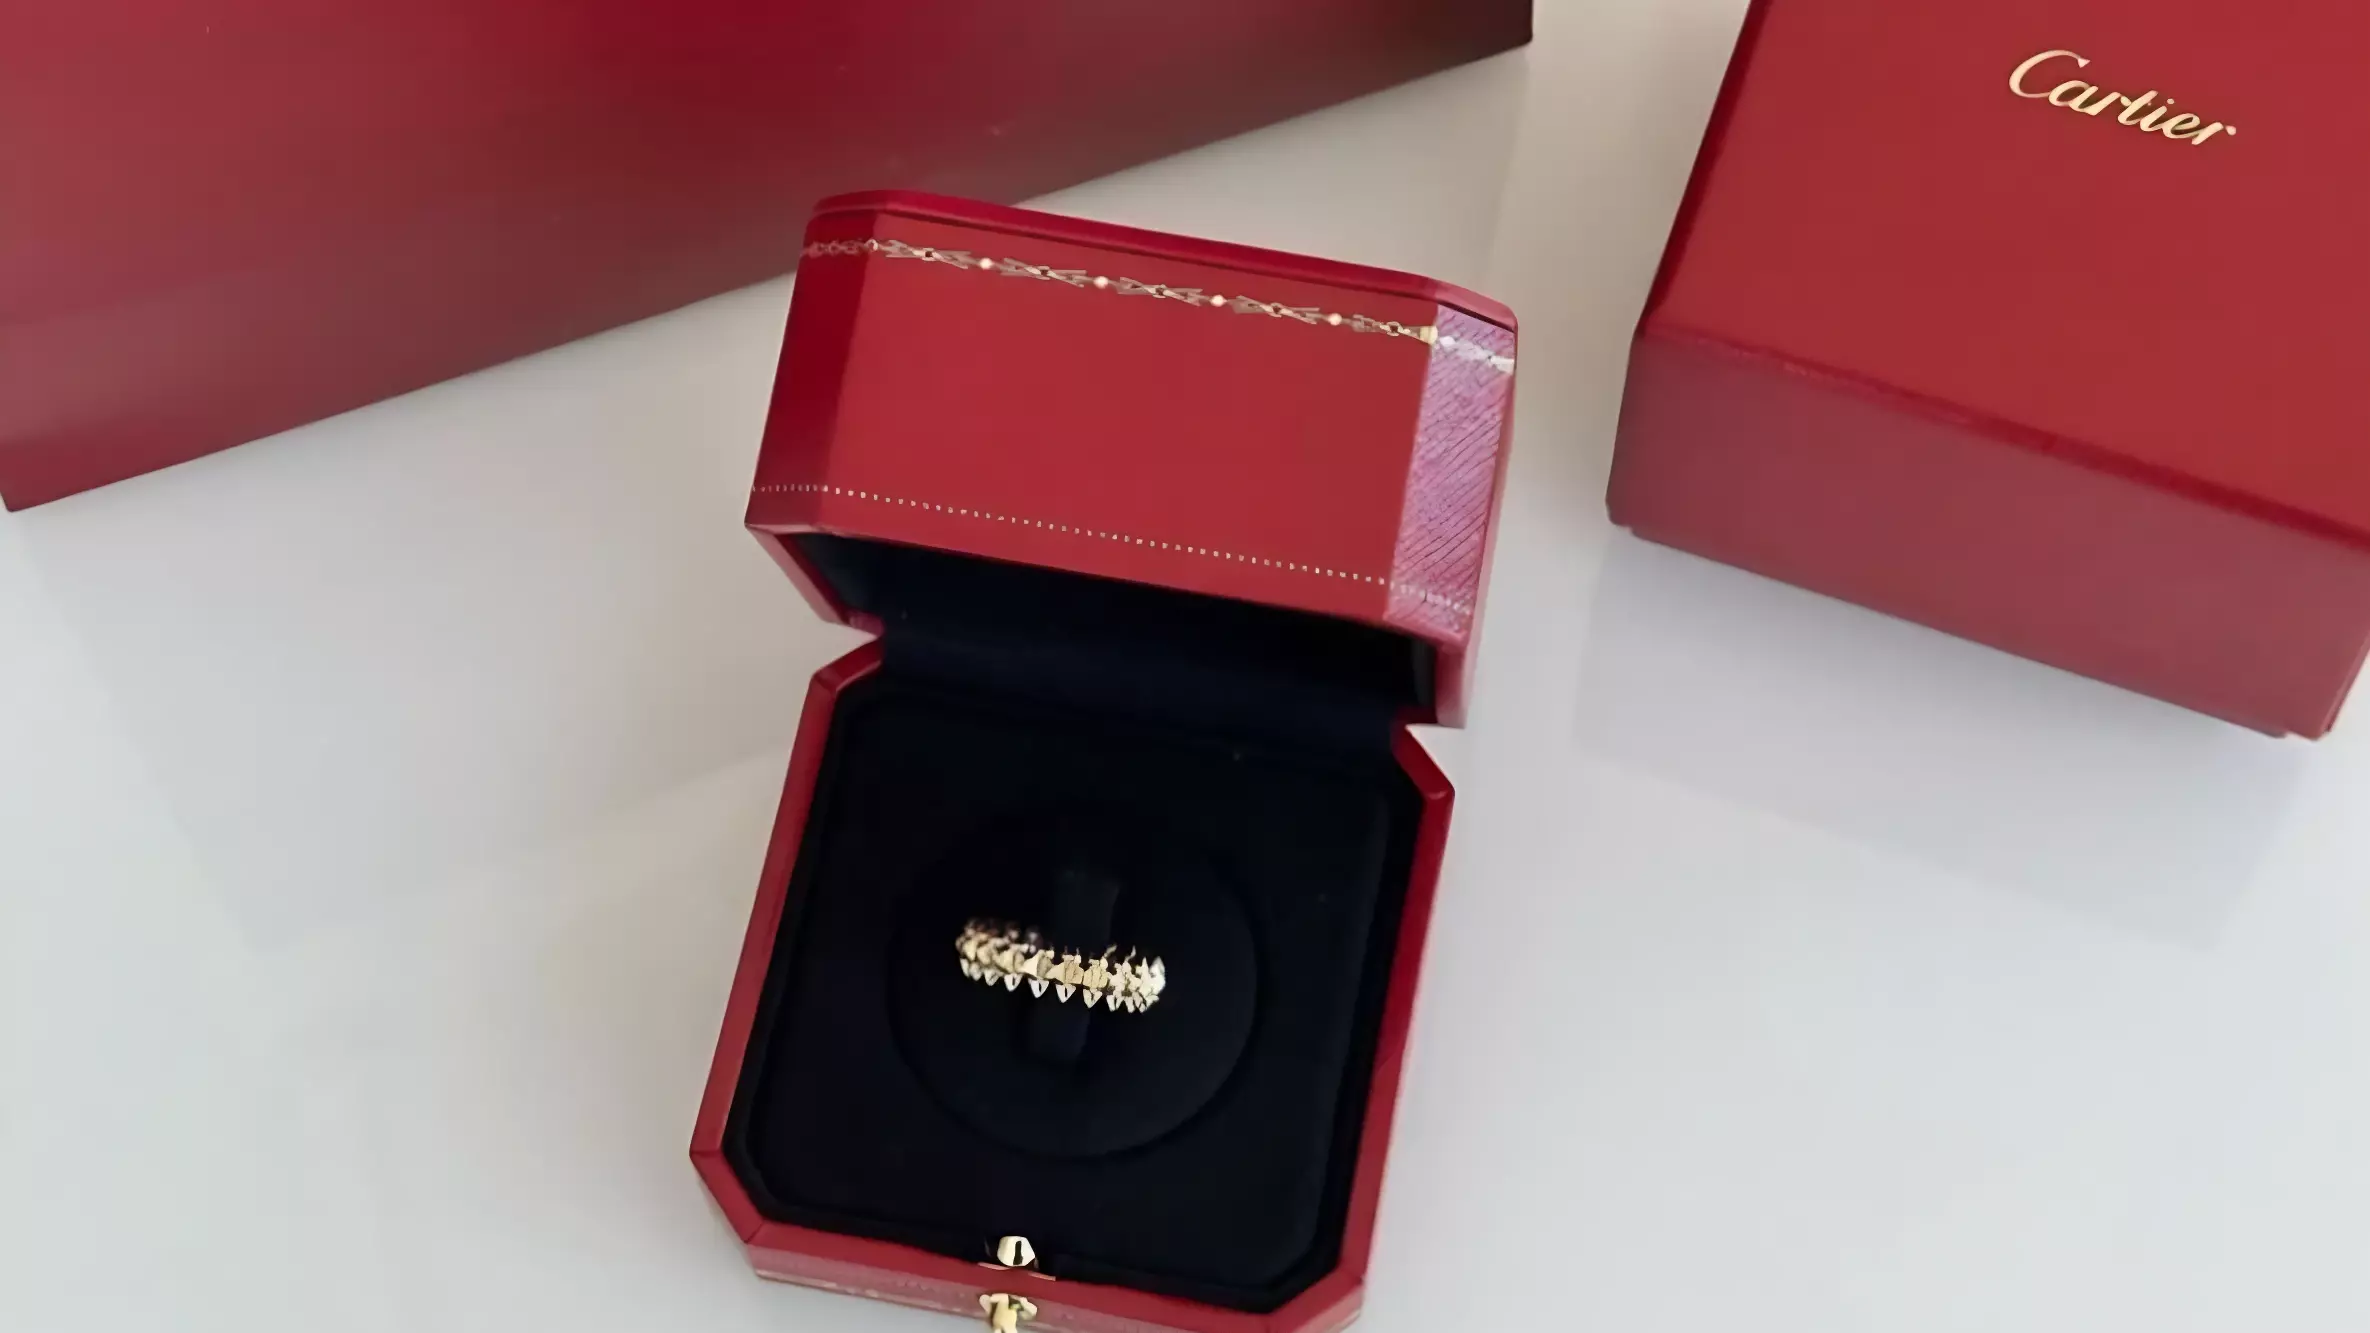 Жена волгоградского депутата Морозова похвасталась кольцом от Cartier